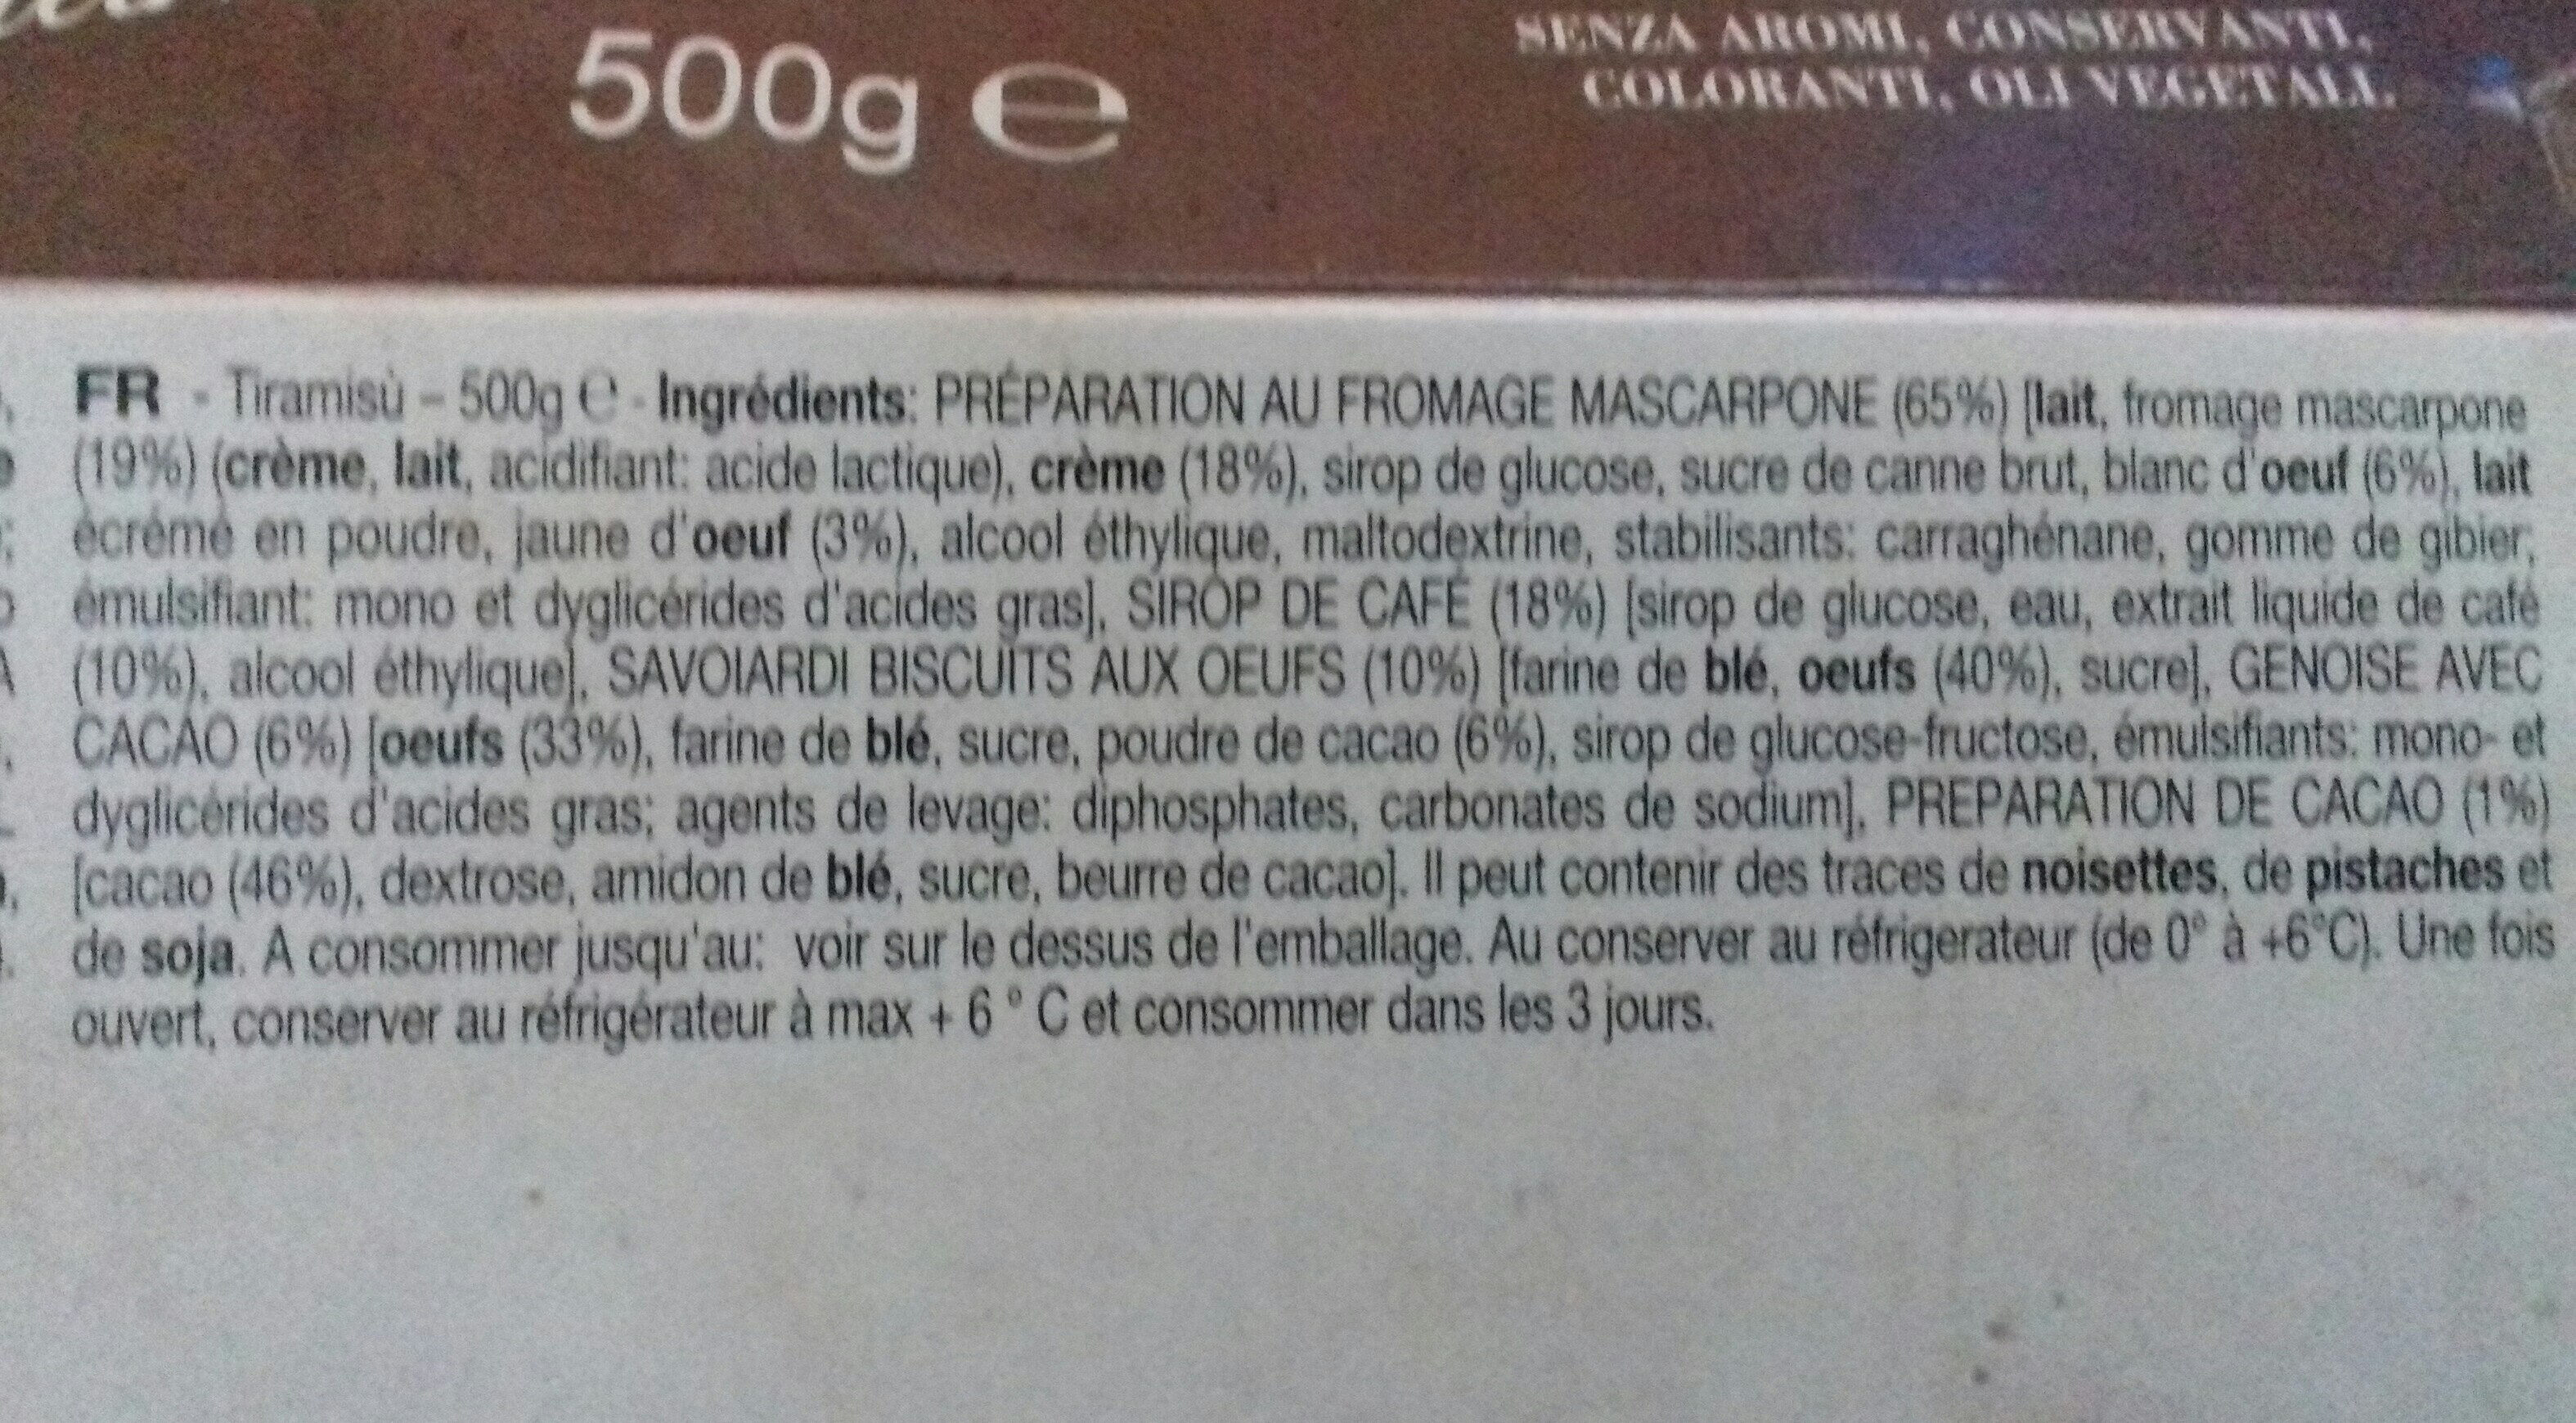 tiramisu - Ingredients - fr